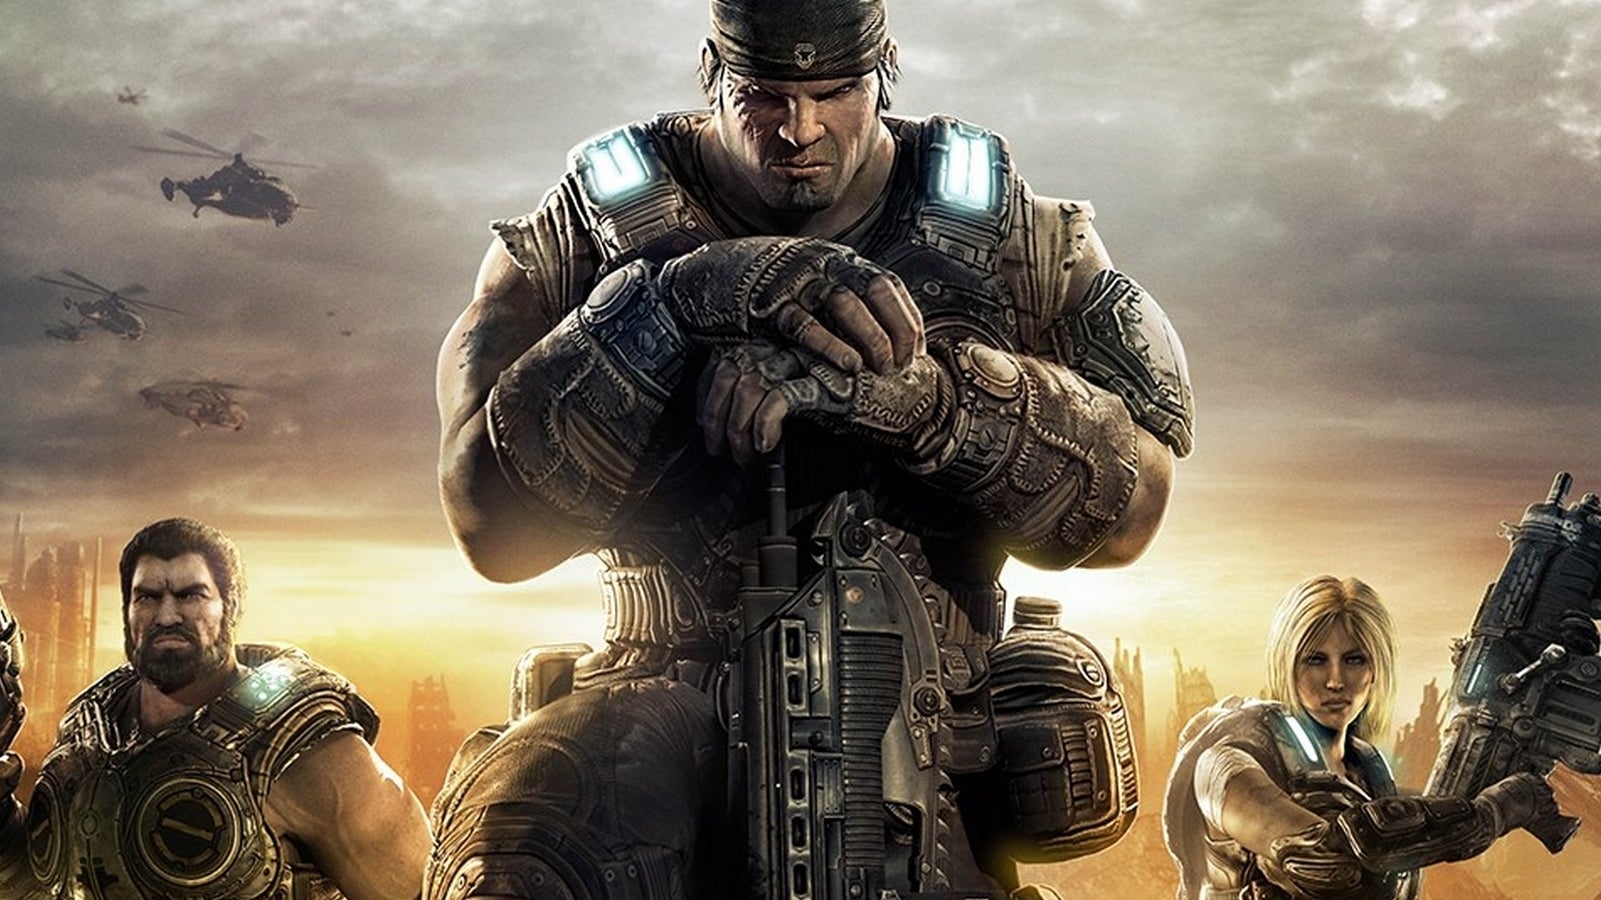 Bilder zu Gears of War 3 für PlayStation 3 war ein Test, sagt Epic